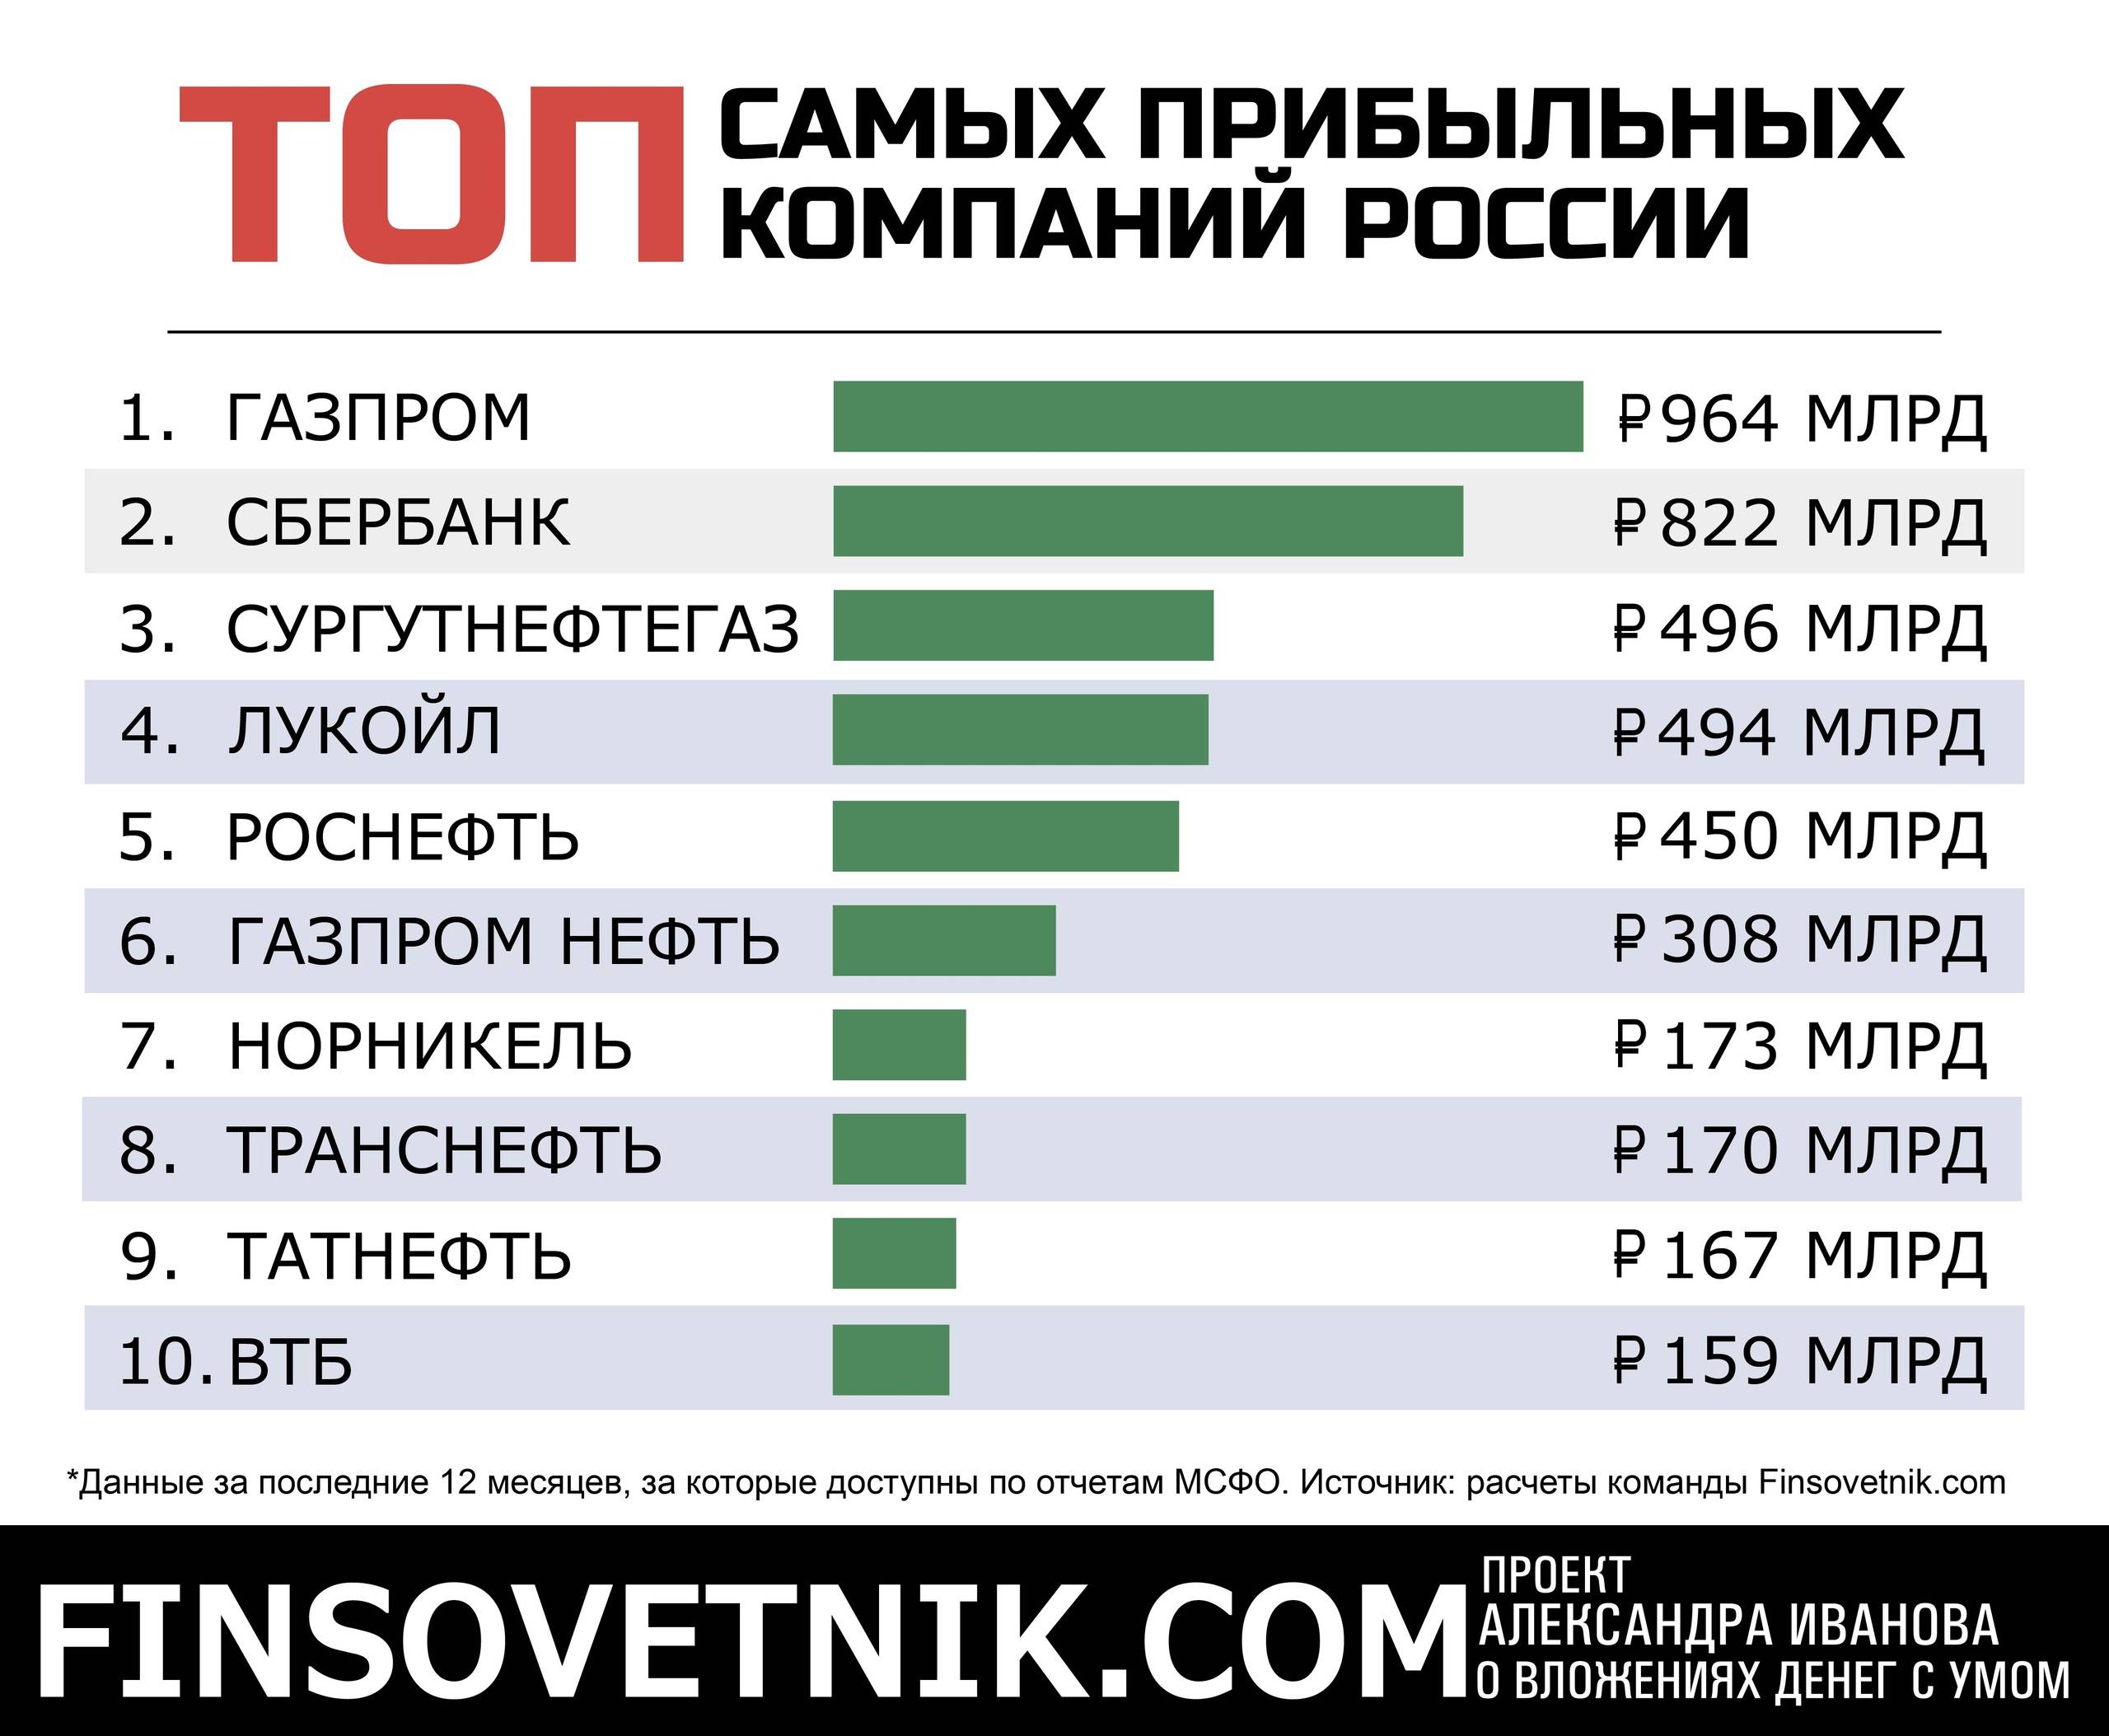 Приму в рейтингах. Самые прибыльные компании. Самый прибыльный бизнес в России. Какой бизнес самый прибыльный. Самые прибыльные предприятия.